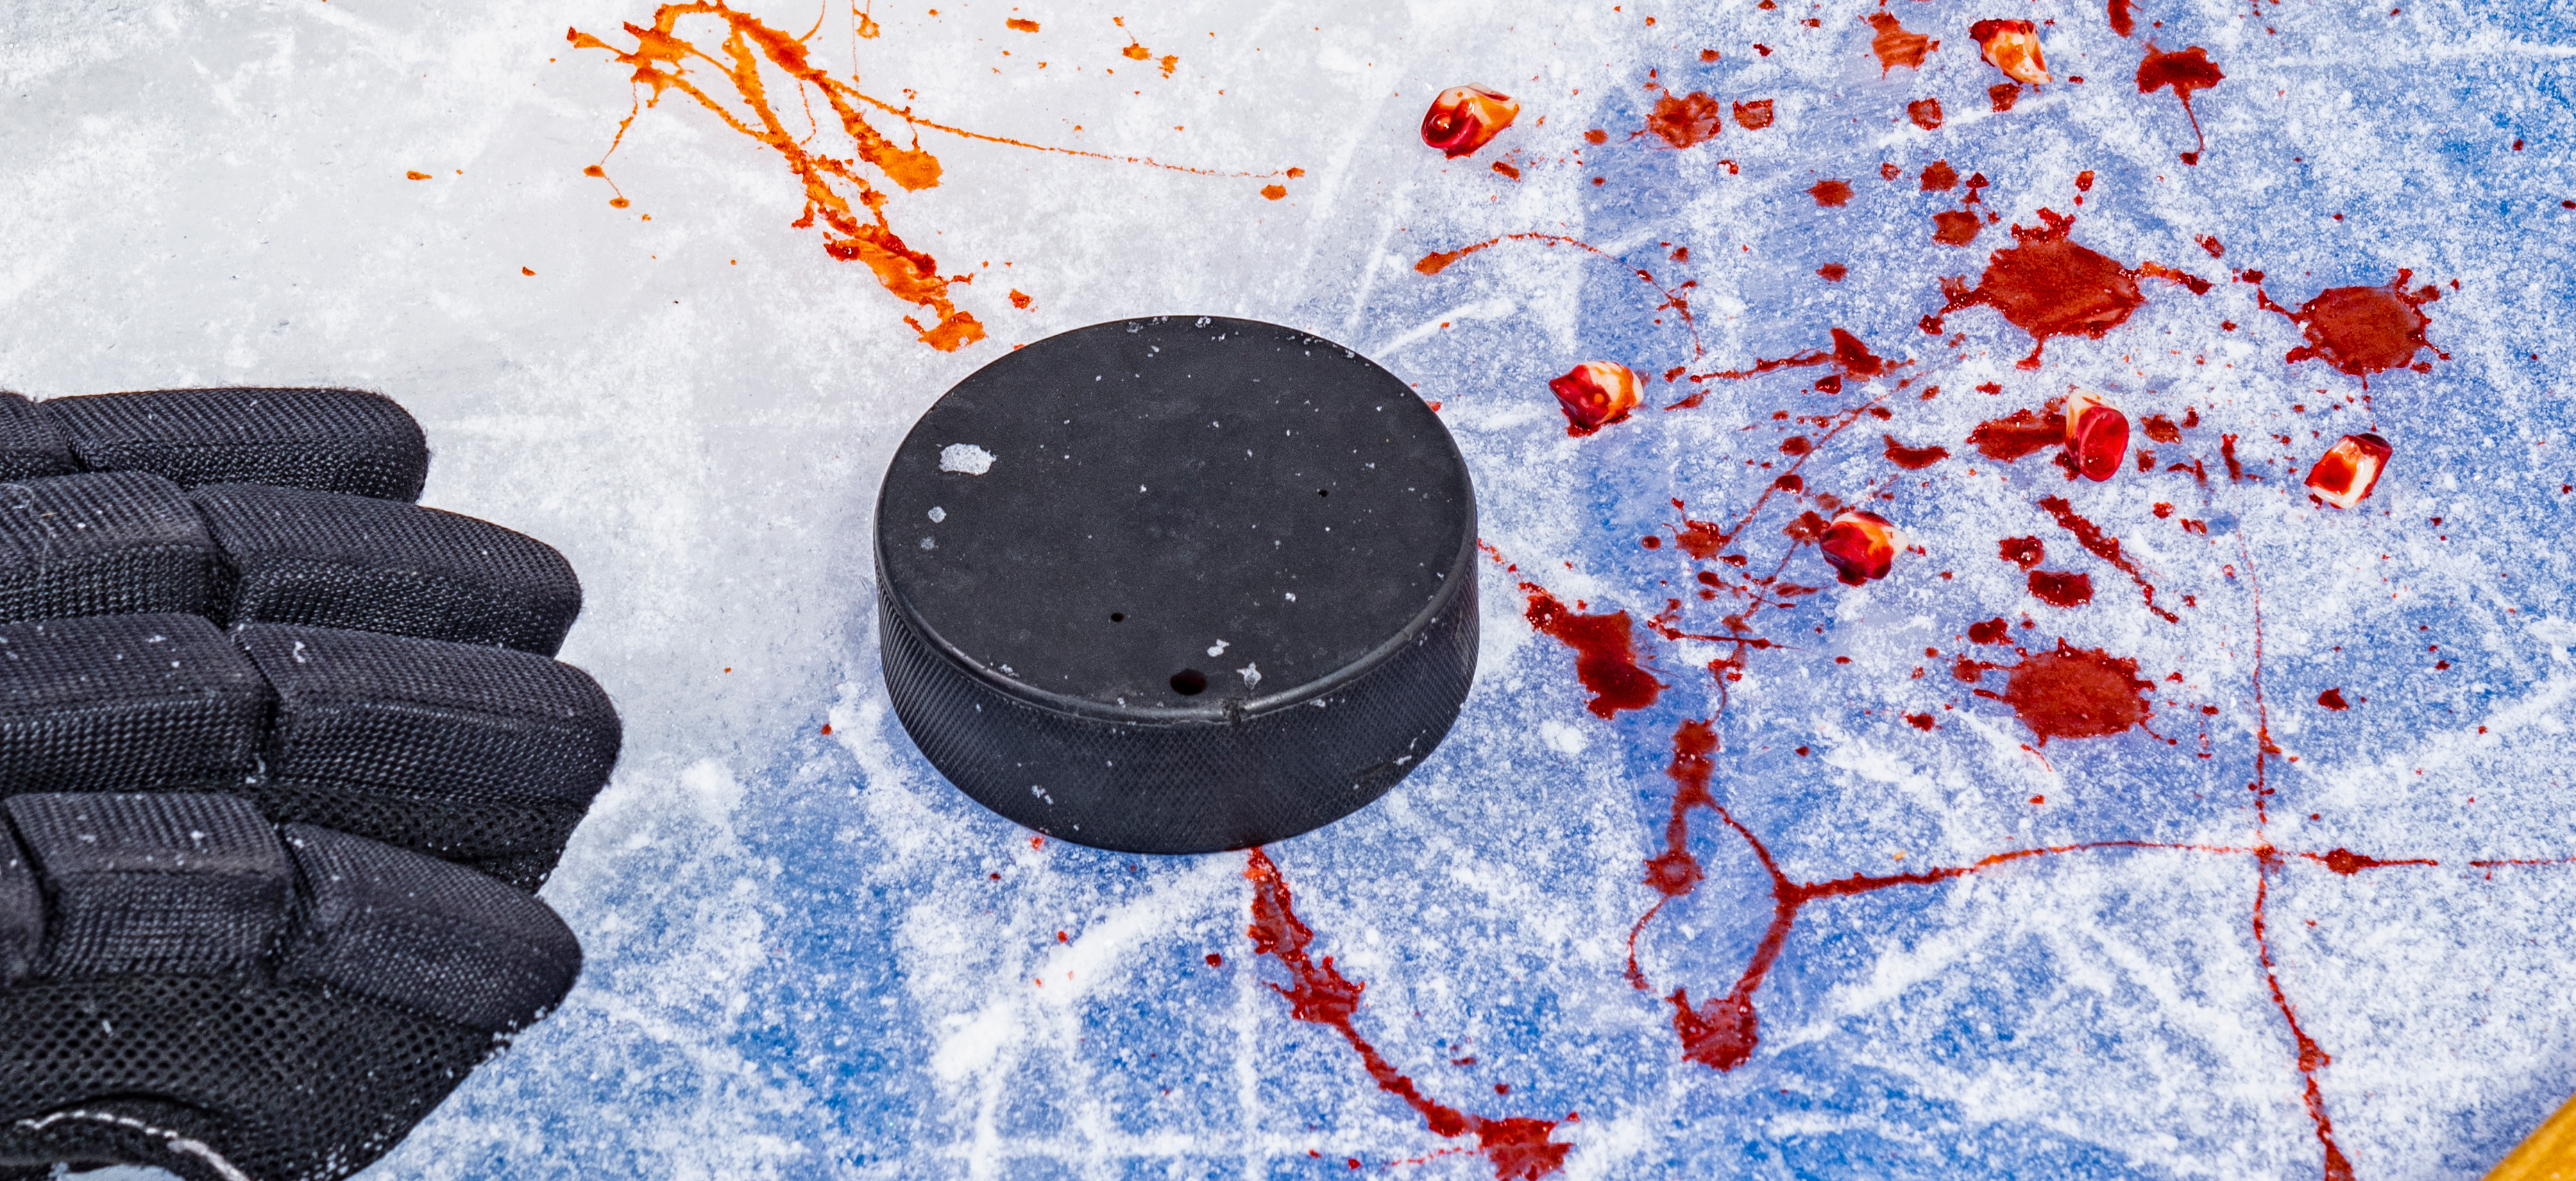 Högsta förvaltningsdomstolen avslår överklagandet med motiveringen att skatterevisorn spelade ishockey på eget initiativ och att ”aktiviteten ägde rum utan arbetsgivarens inblandning”.